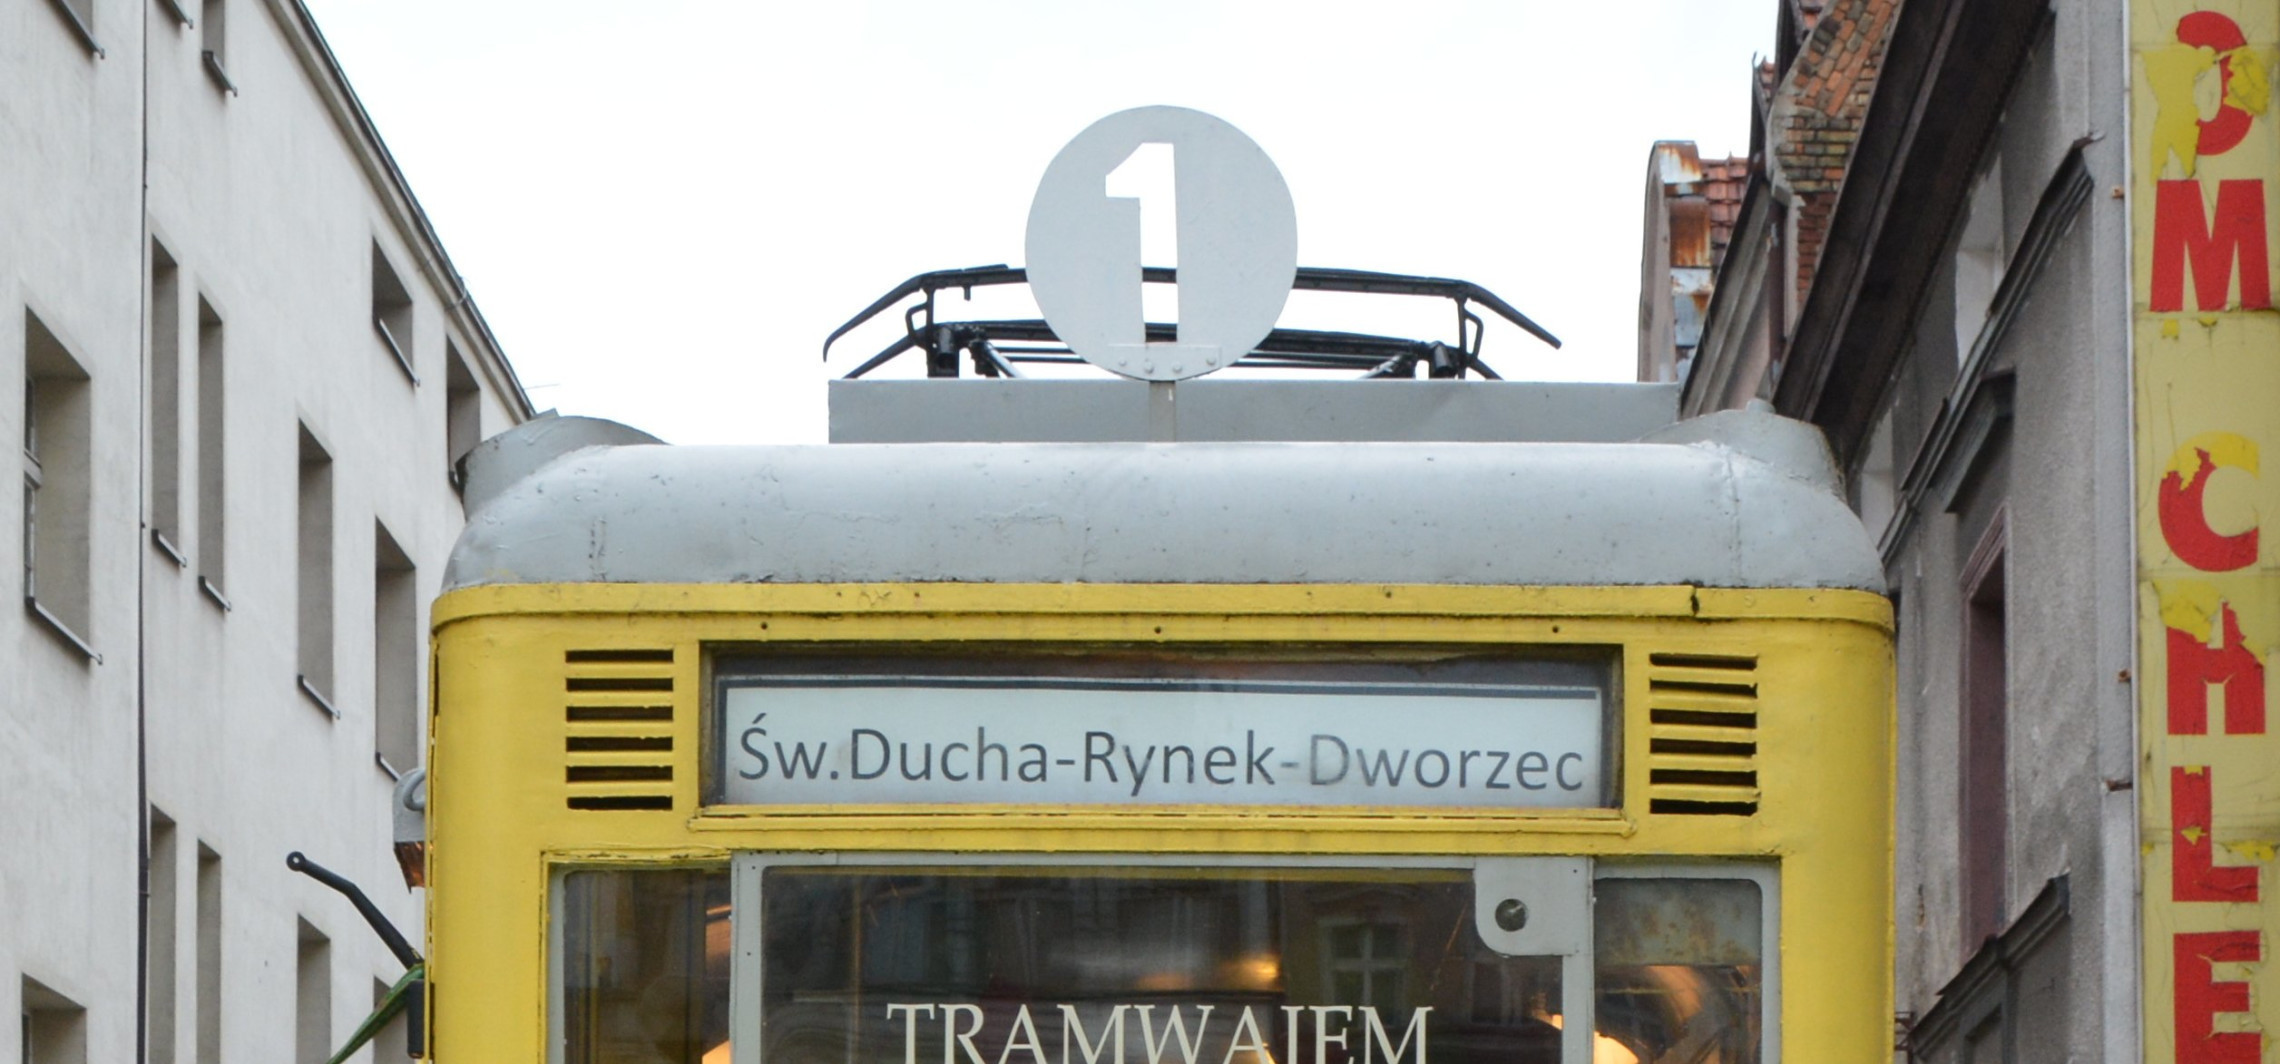 Inowrocław - Czy da się odratować wagonik? Trwają konsultacje